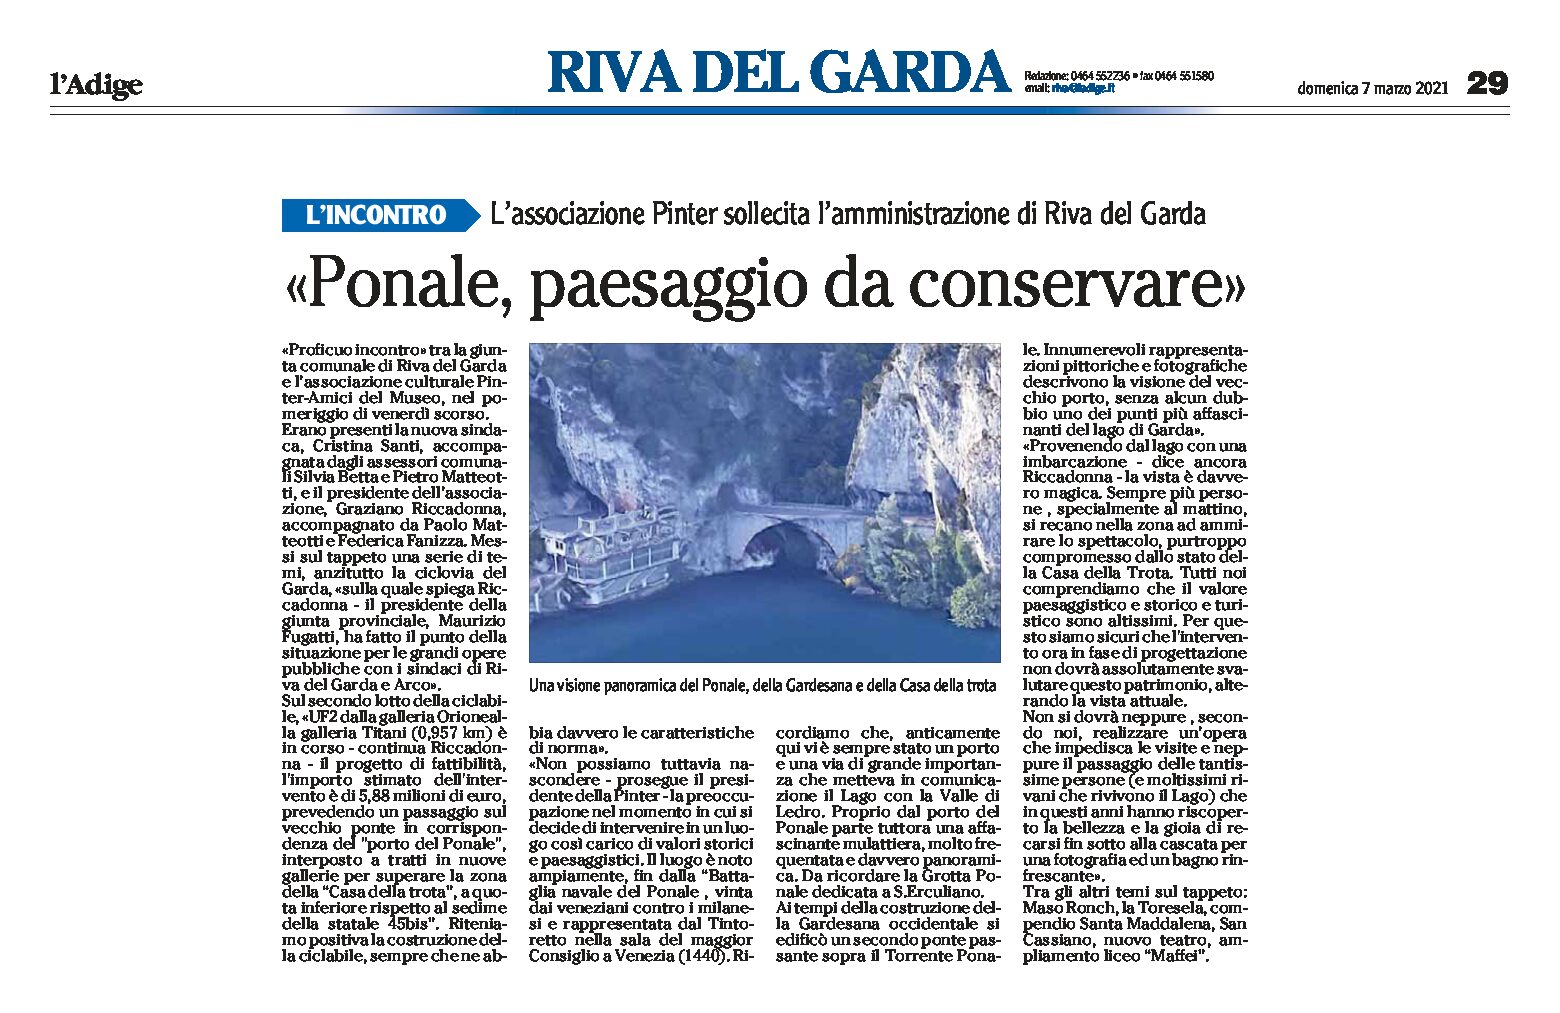 Ponale: “paesaggio da conservare” l’associazione Pinter sollecita l’amministrazione di Riva